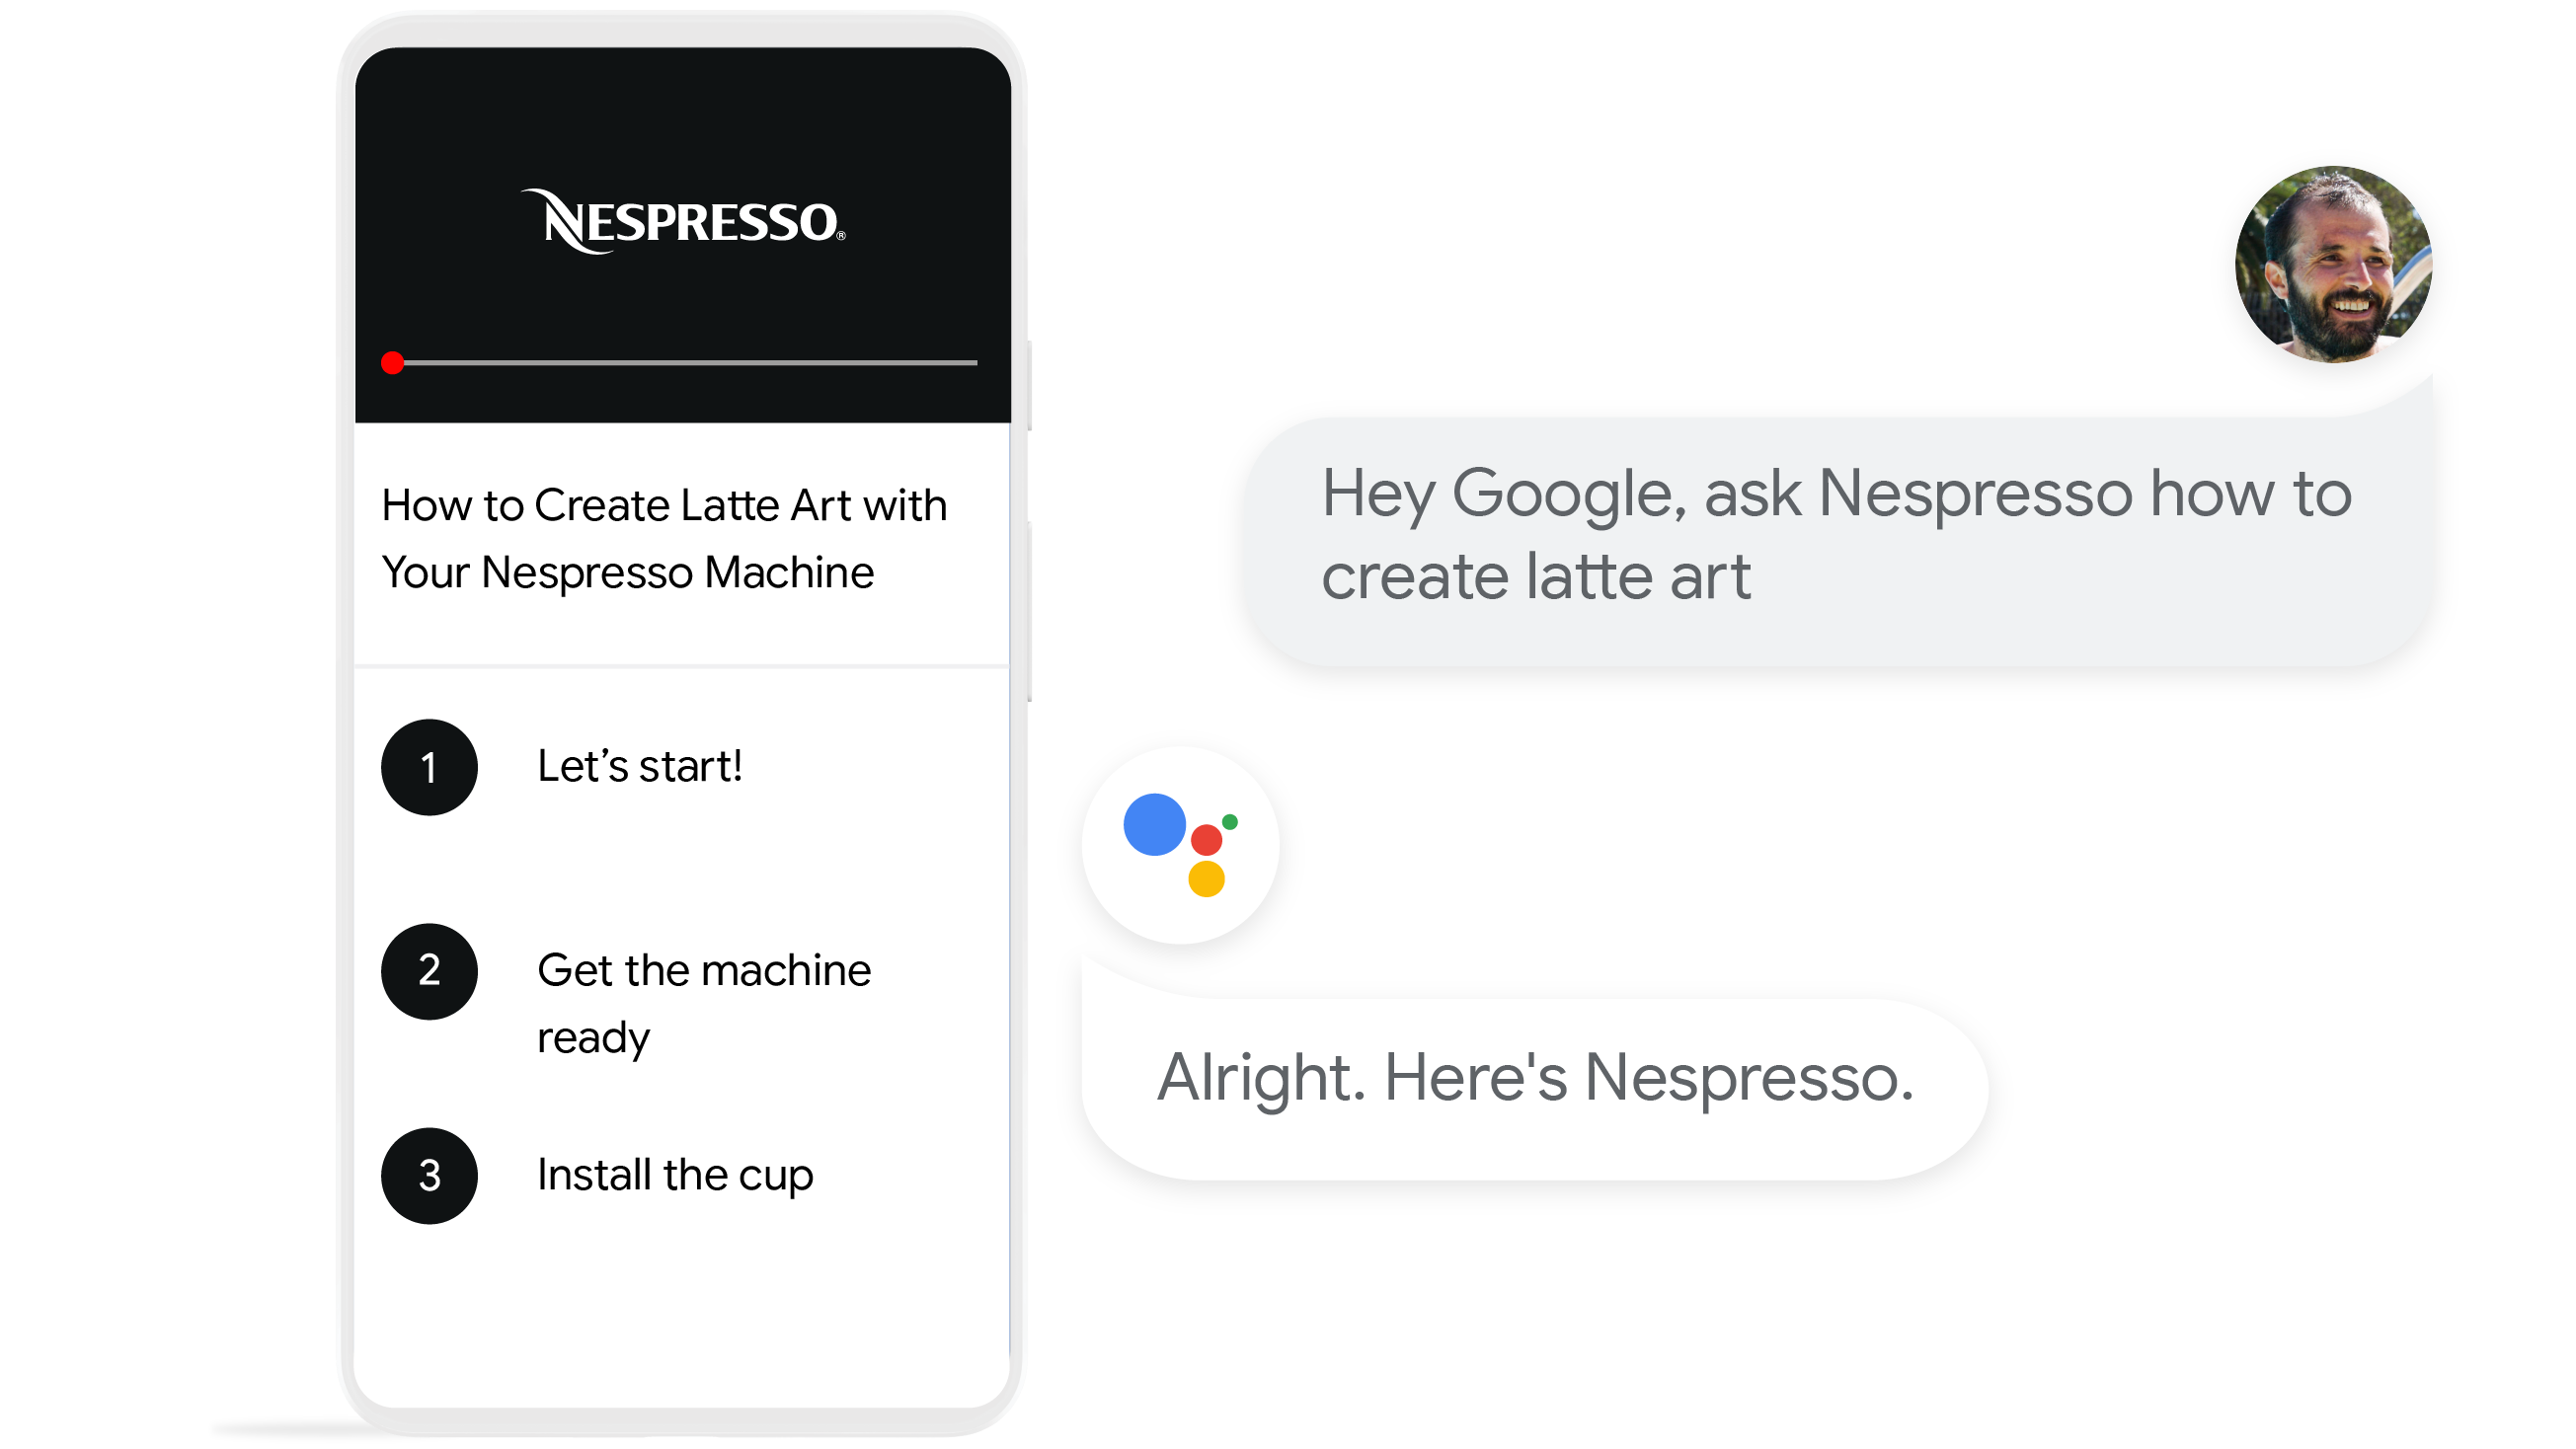 Google Assistant | Google Developers